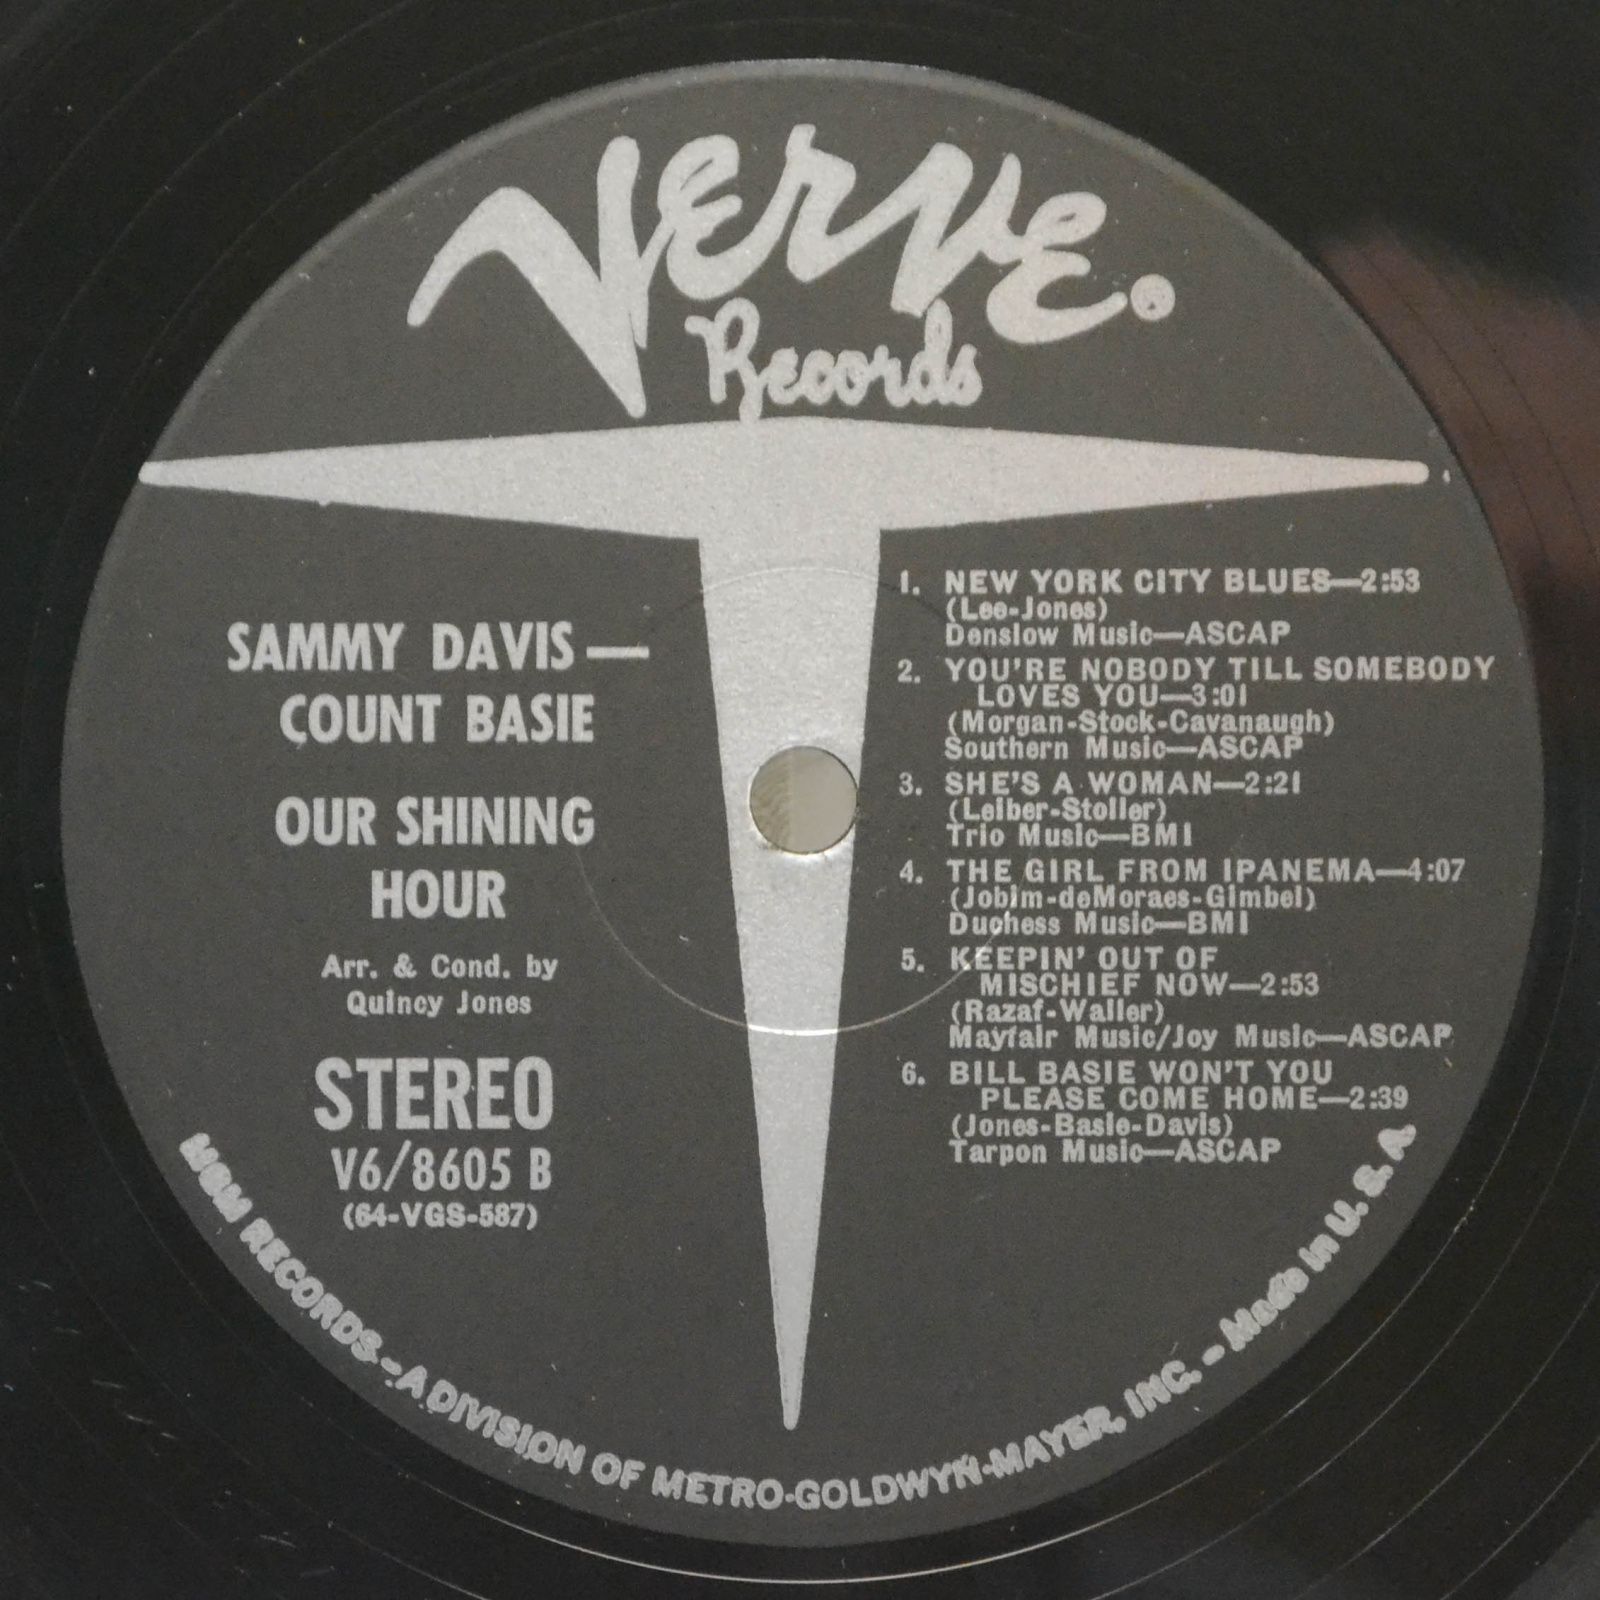 Sammy Davis, Count Basie — Our Shining Hour, 1969